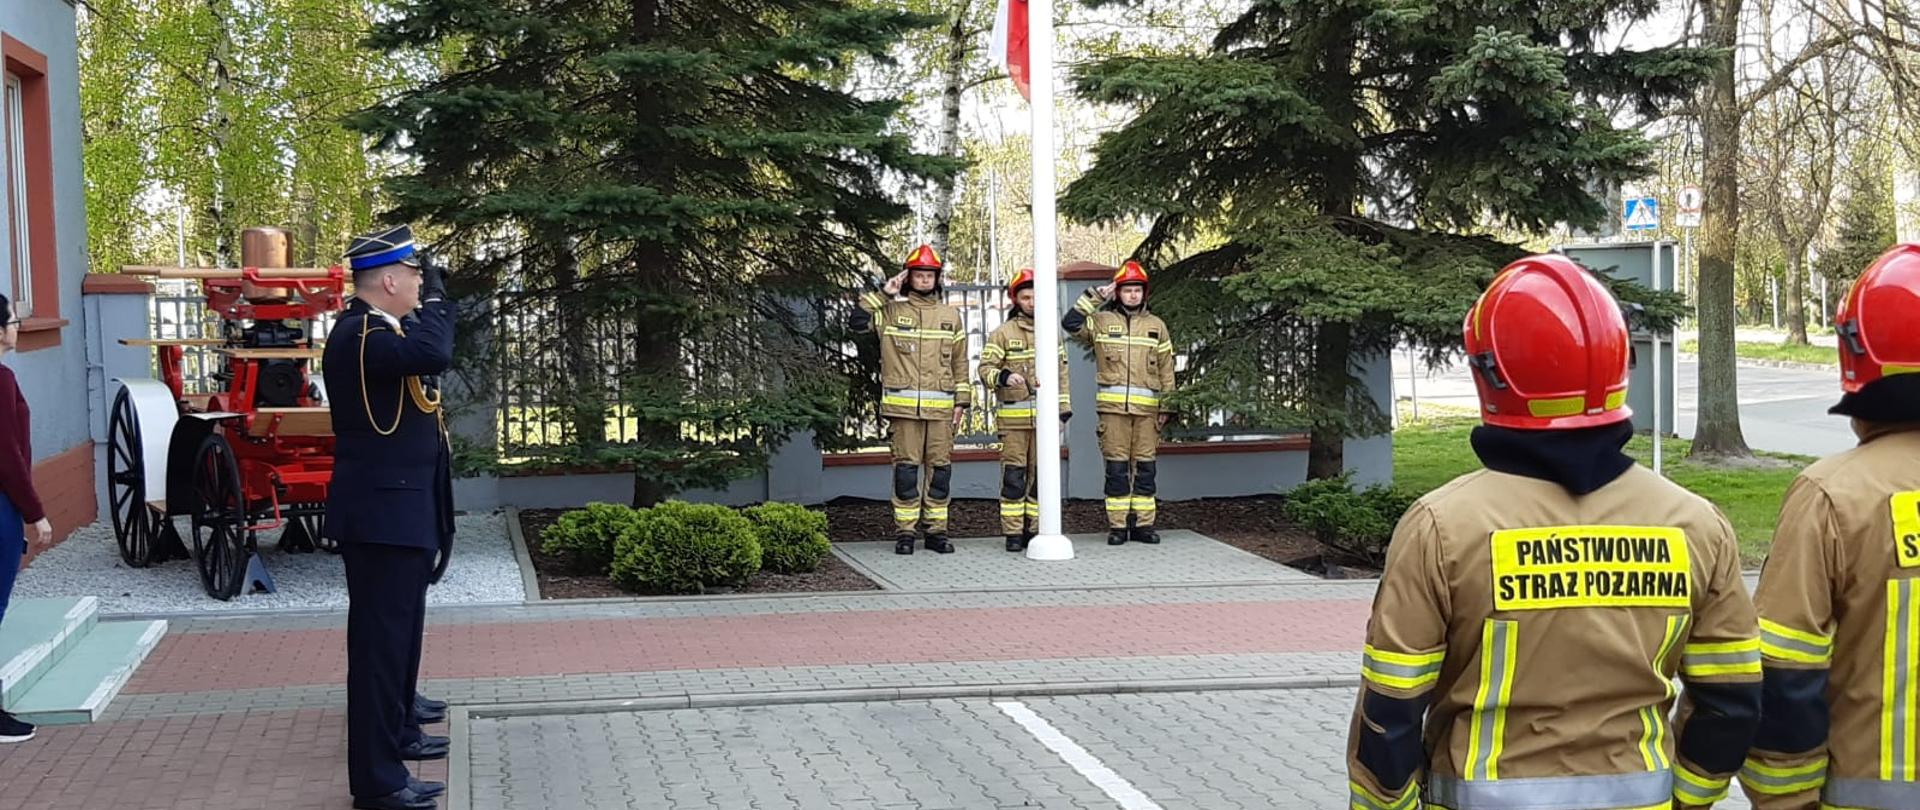 za zdjęciu strażacy stojący na zbiórce 1 ma mundur wyjściowy reszta jest w ubraniach bojowych i czerwonym hełmach, trzech stoi za masztem flagowym dwóch po prawej stronie, w tle dwa drzewa sikawka i ogrodzenie